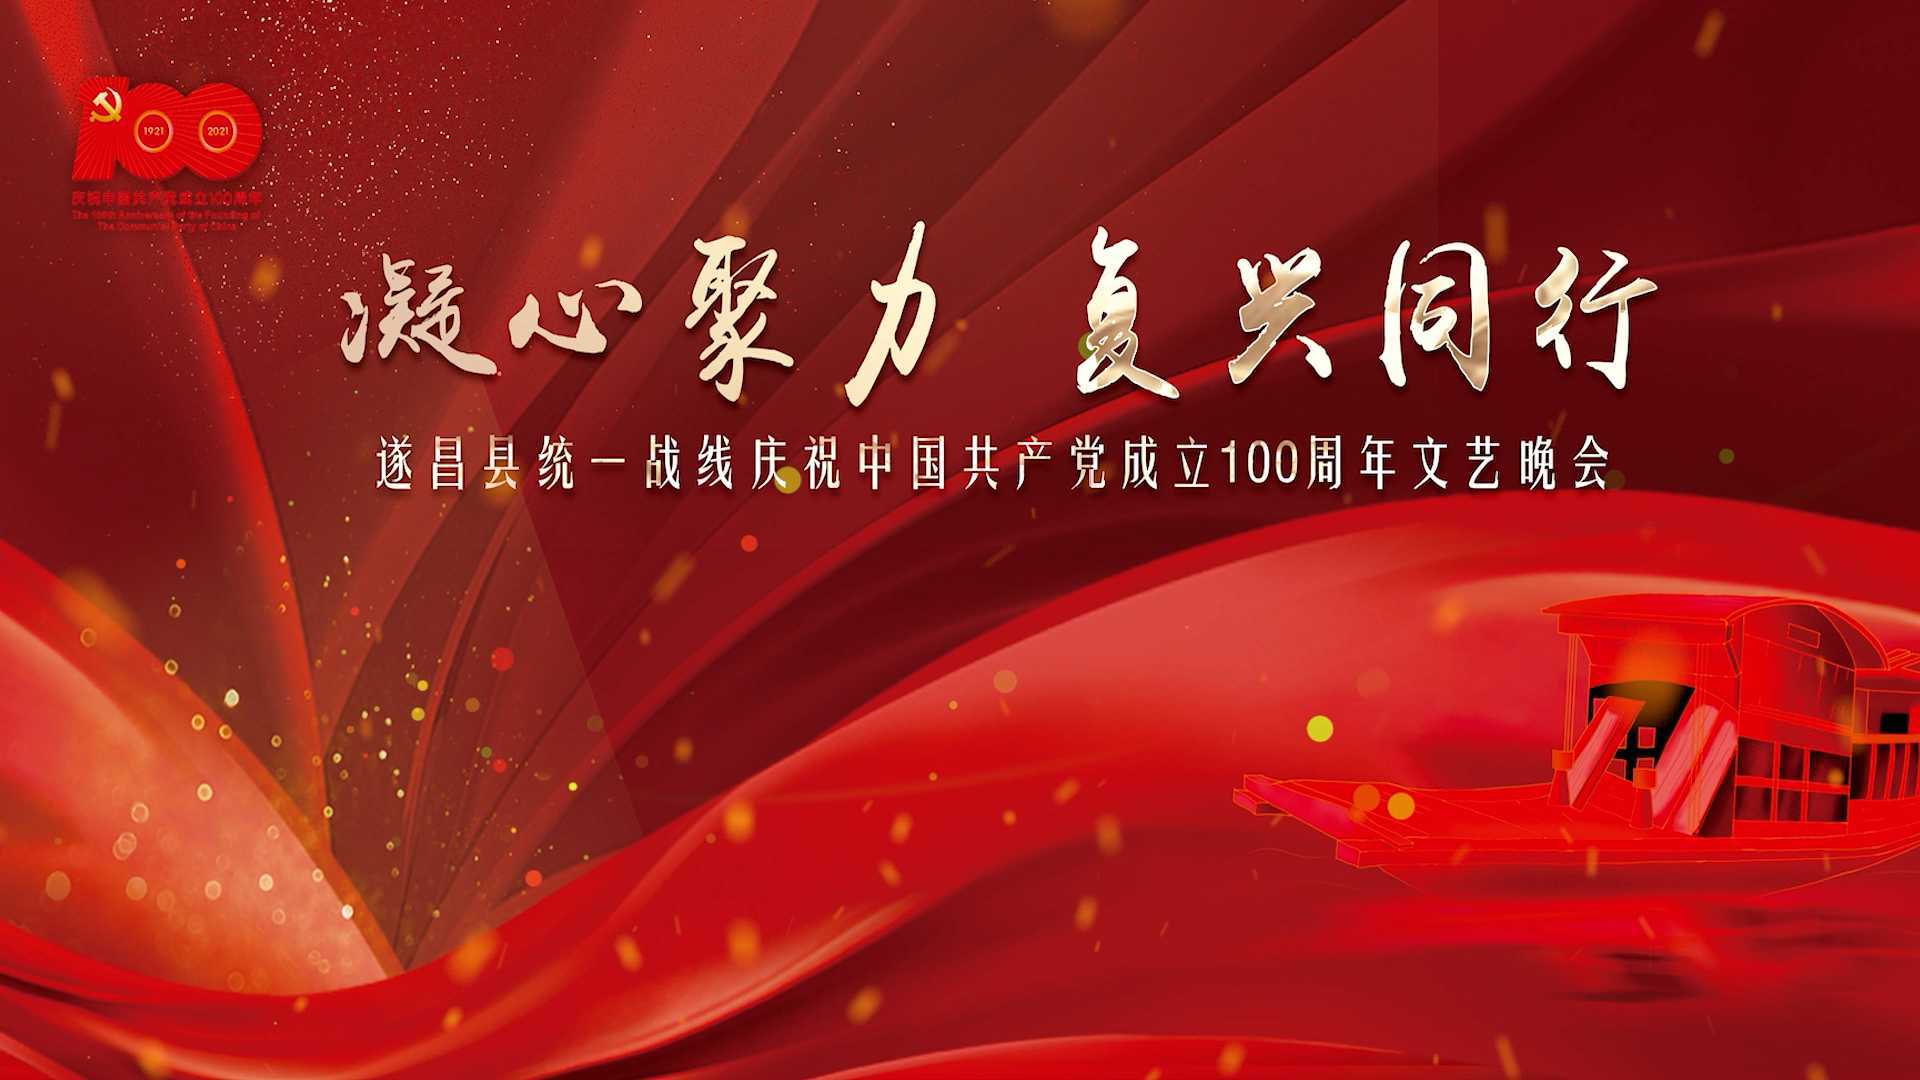 “凝心聚力 复兴同行”——遂昌县统一战线庆祝中国共产党成立100周年文艺晚会